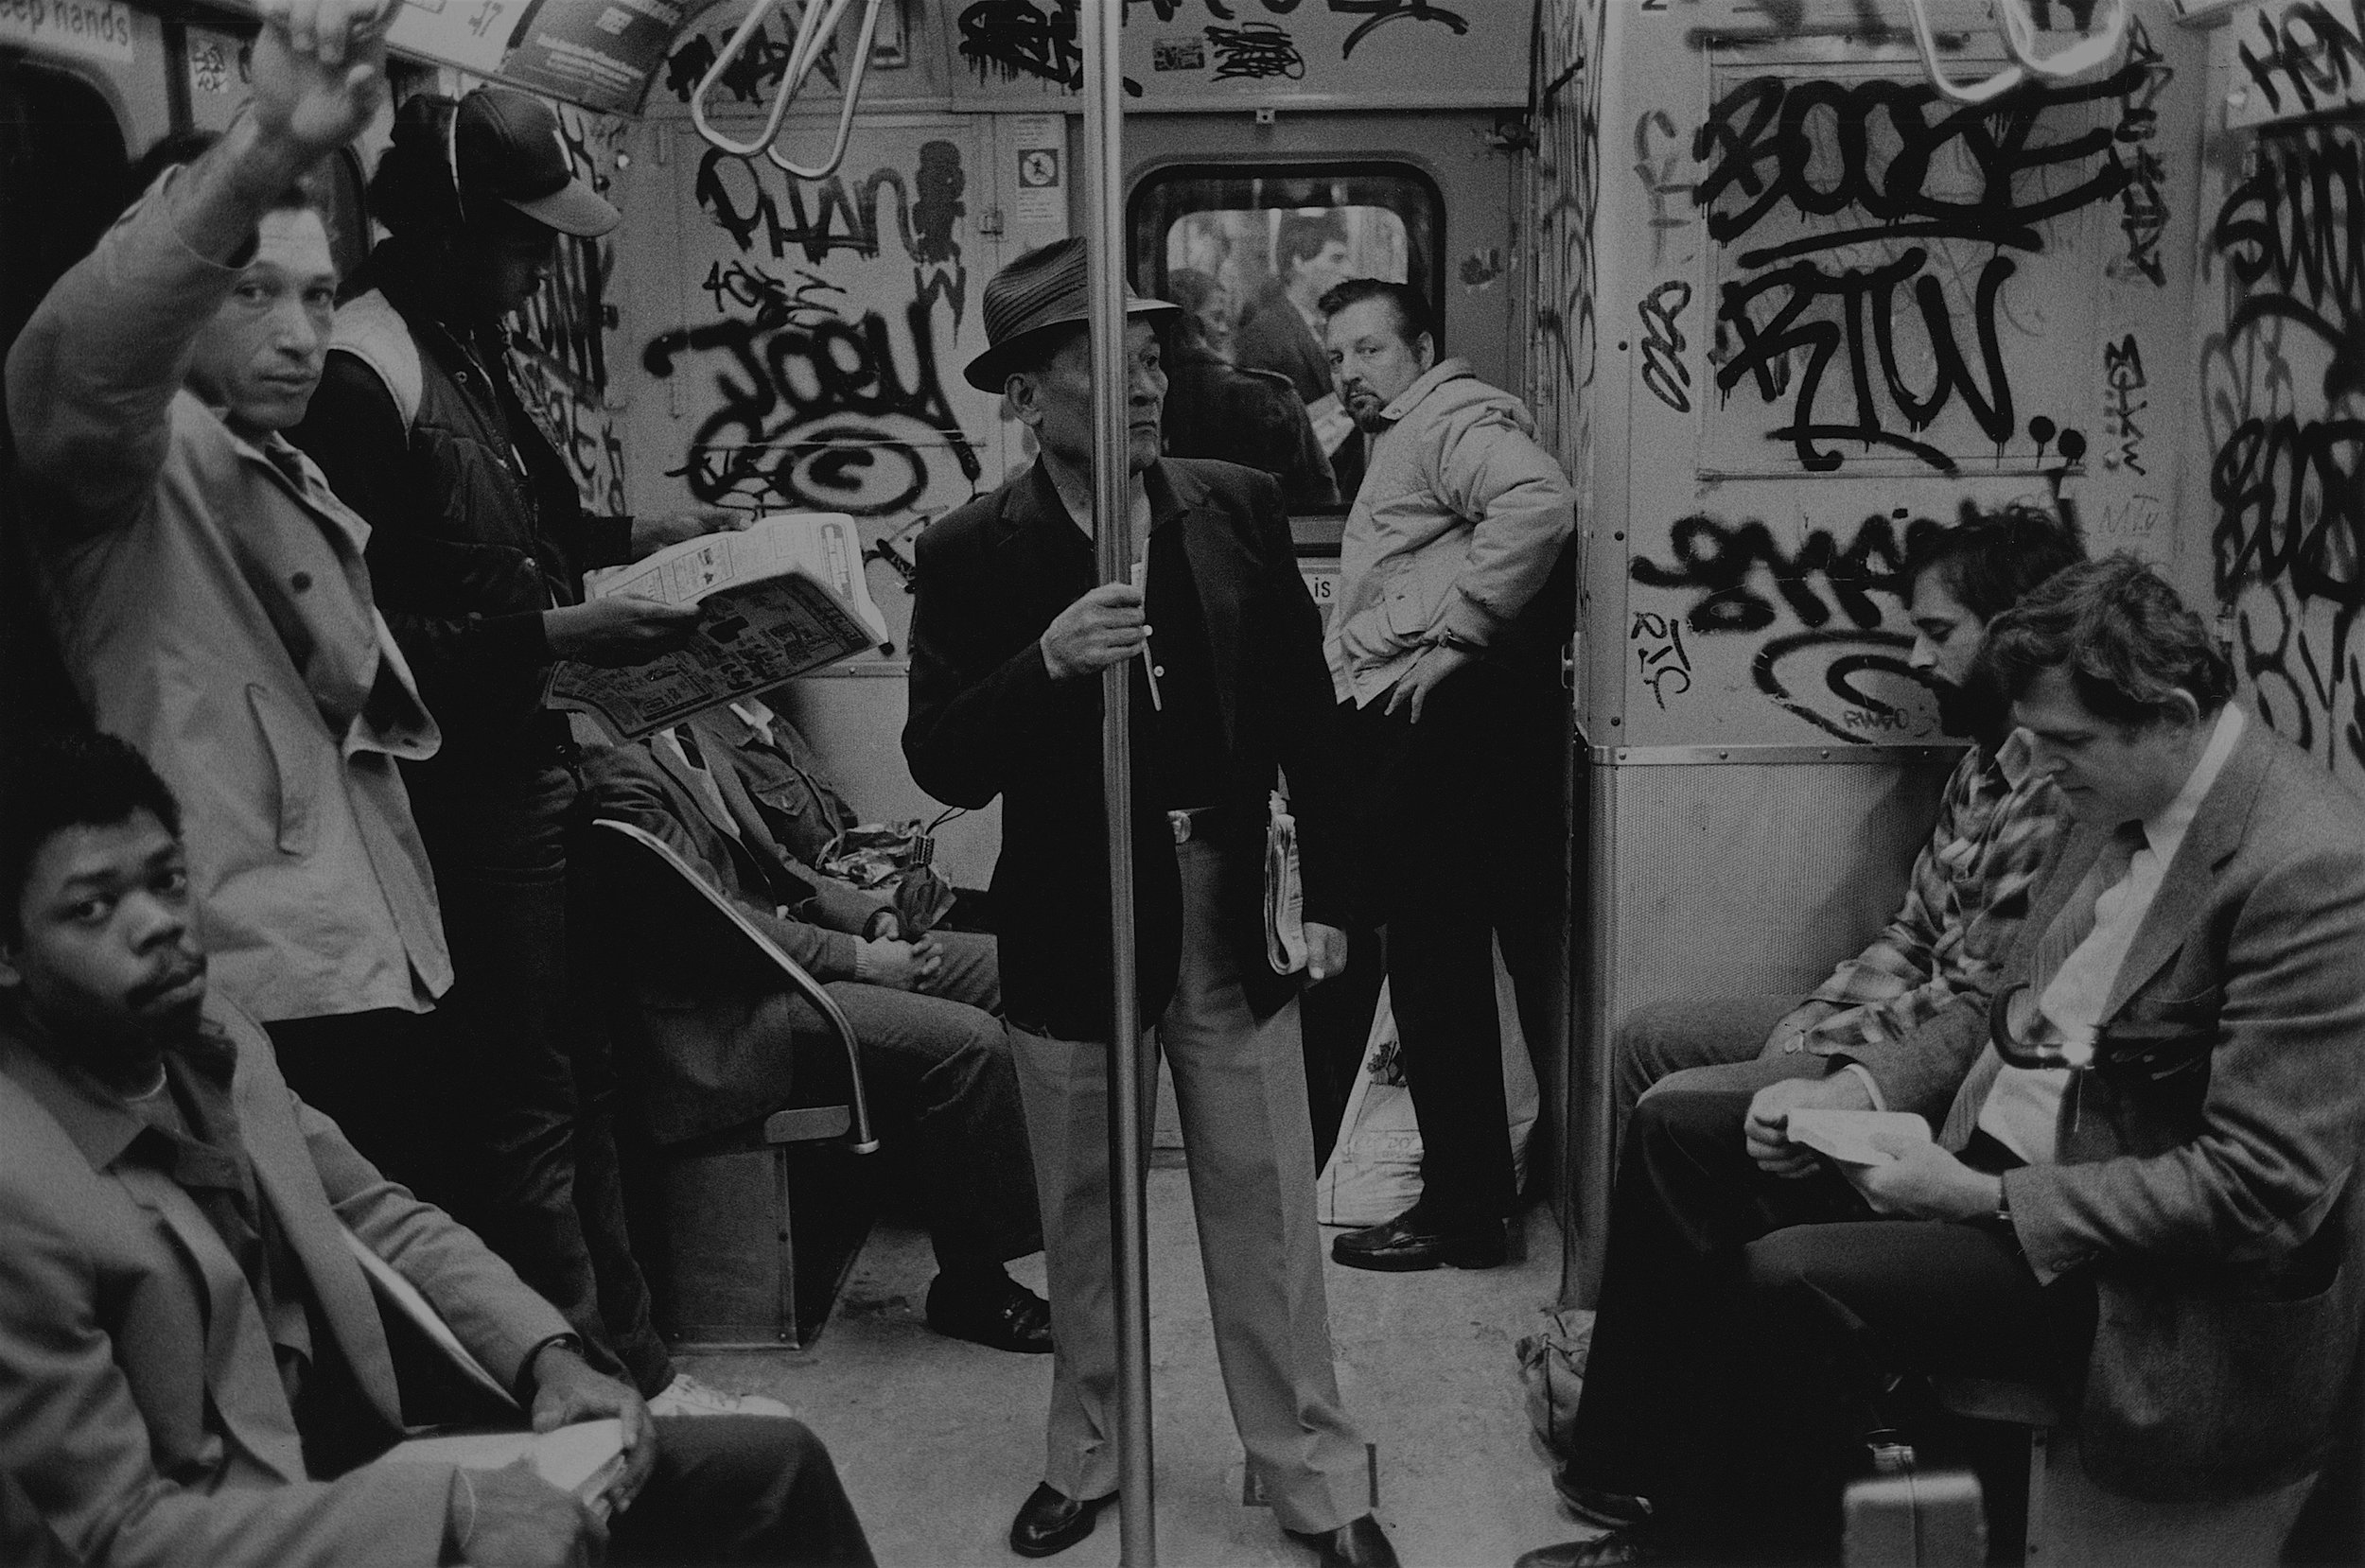 hairy eyeball on irt train, nyc, c. 1982